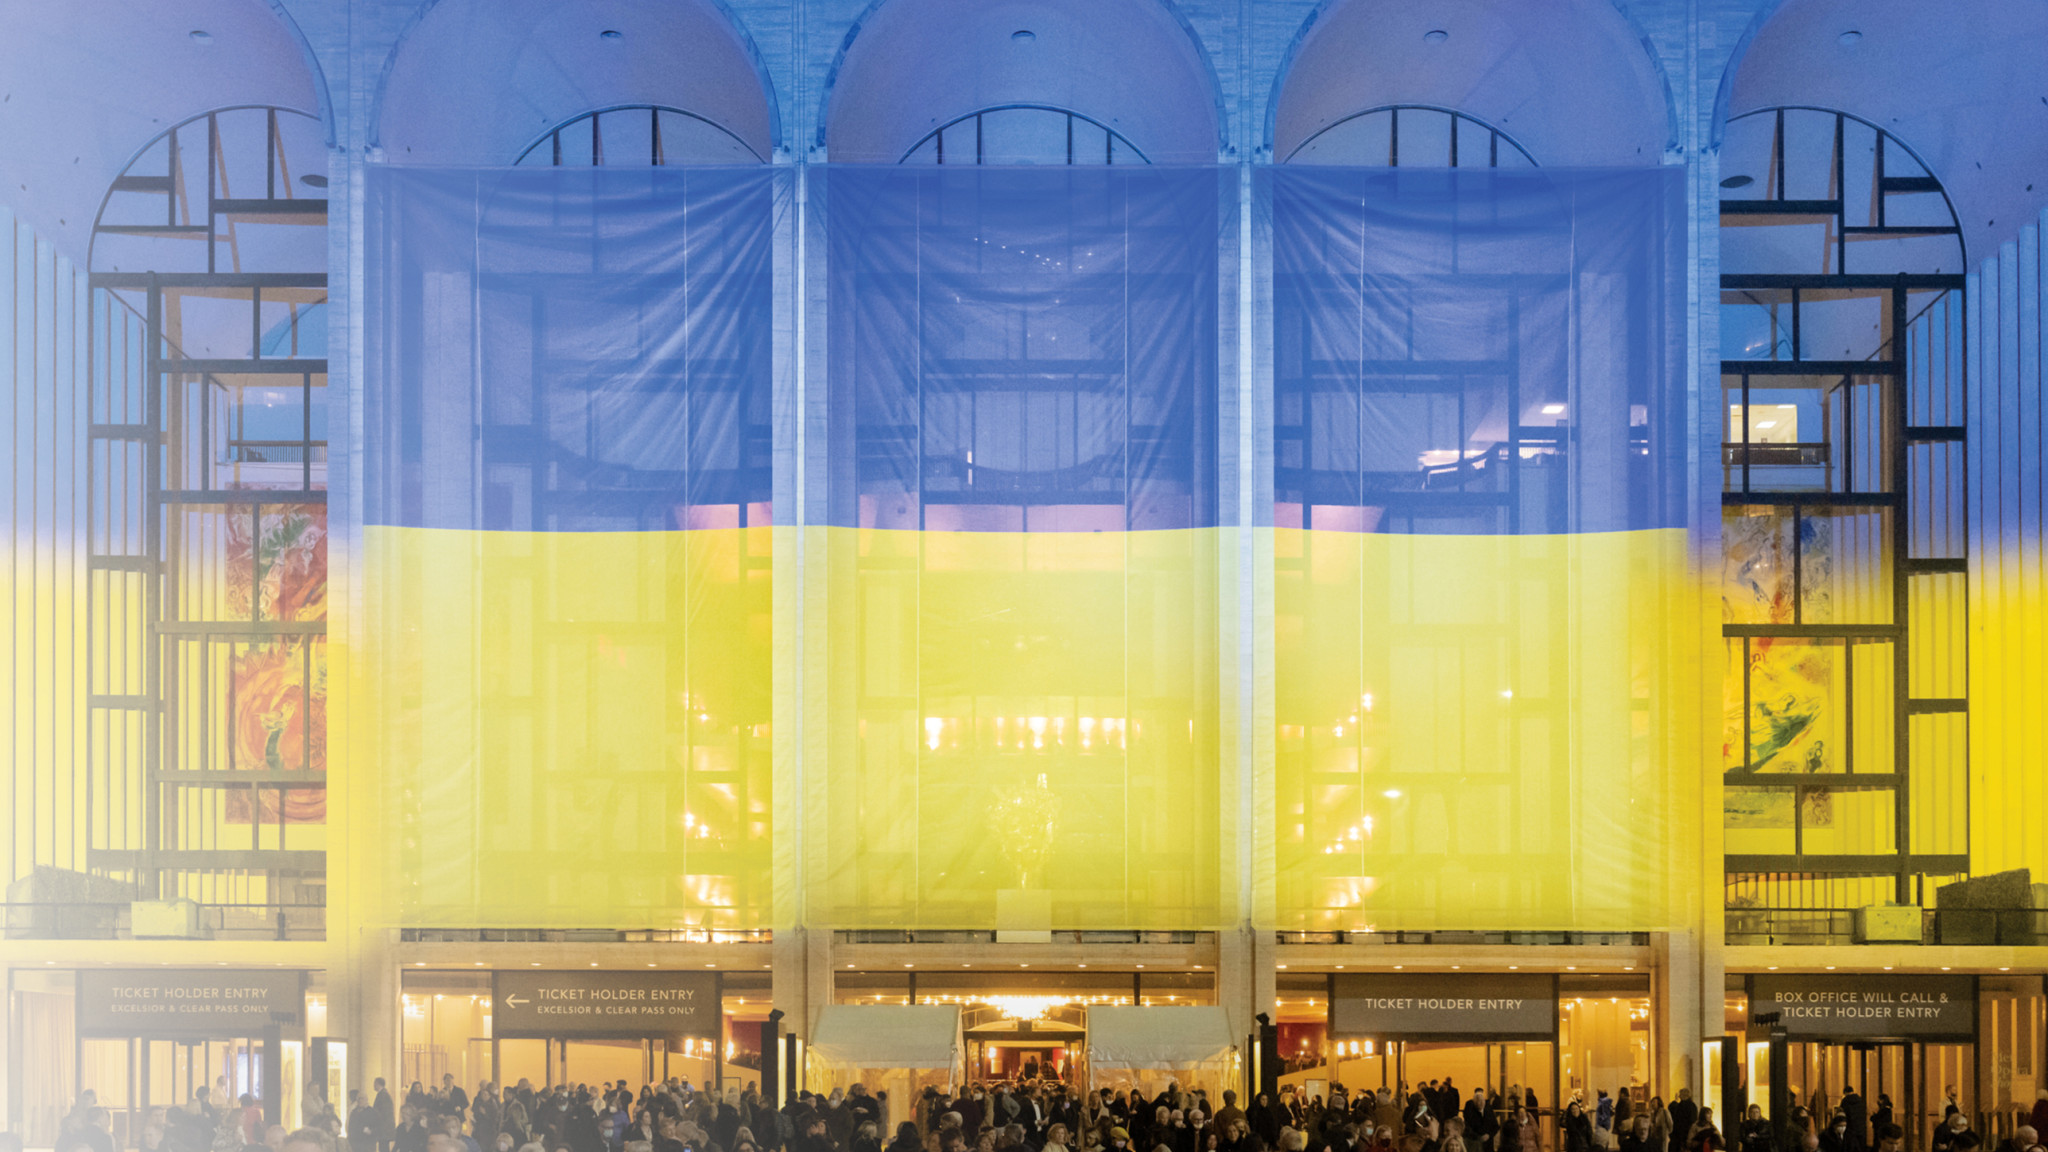 The Met, Decca Classics and Deutsche Grammophon Release 'A Concert for Ukraine' Album Benefitting Ukrainian Relief Efforts